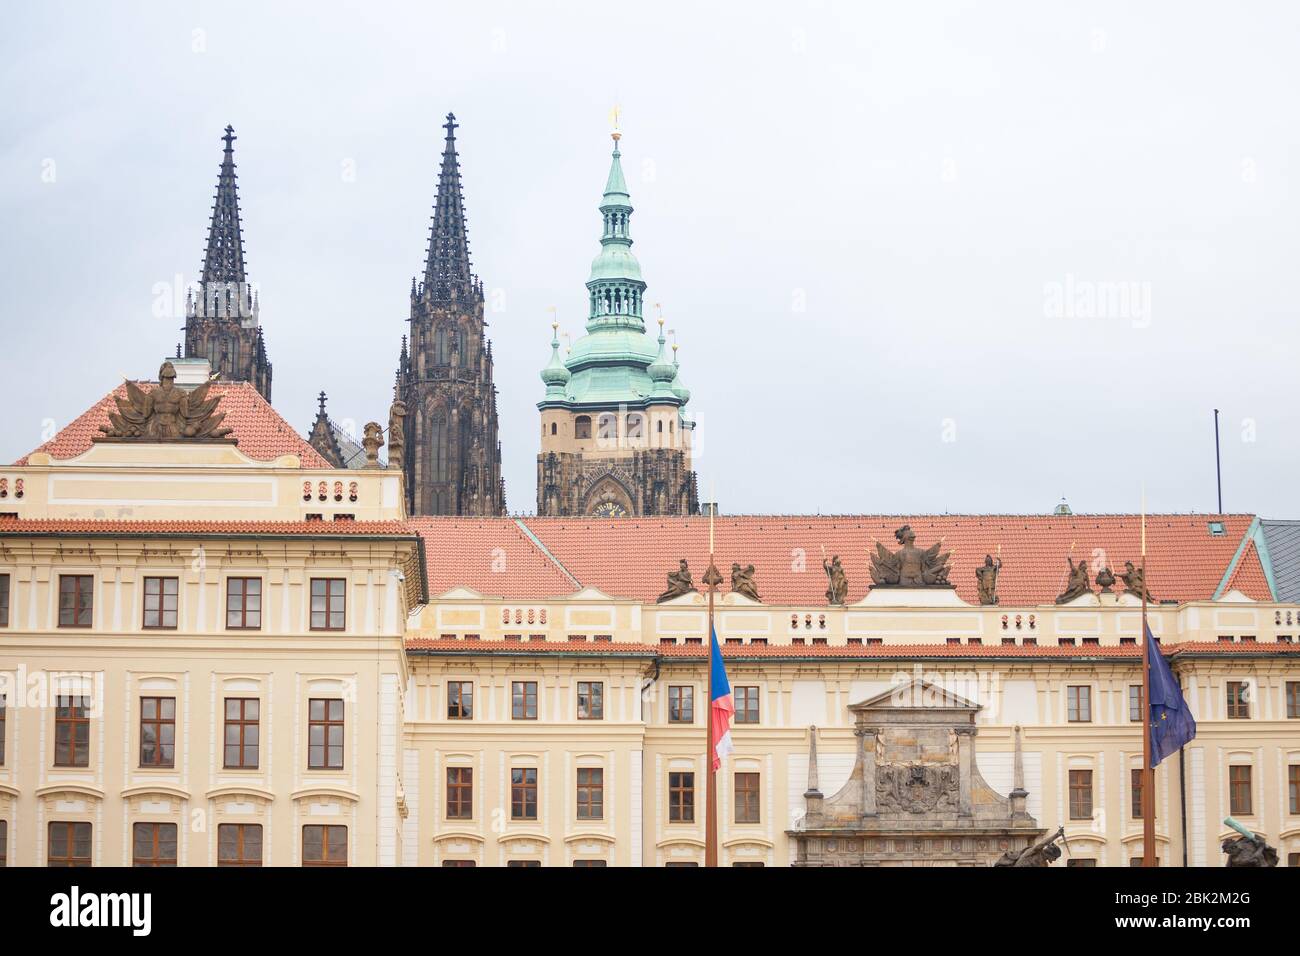 Nove Kralovsky Palac ou Nouveau Palais Royal du Château de Prague (Prazsky Hrad), vu de son entrée principale sur Hradcany, un monument de Prague, République tchèque Banque D'Images